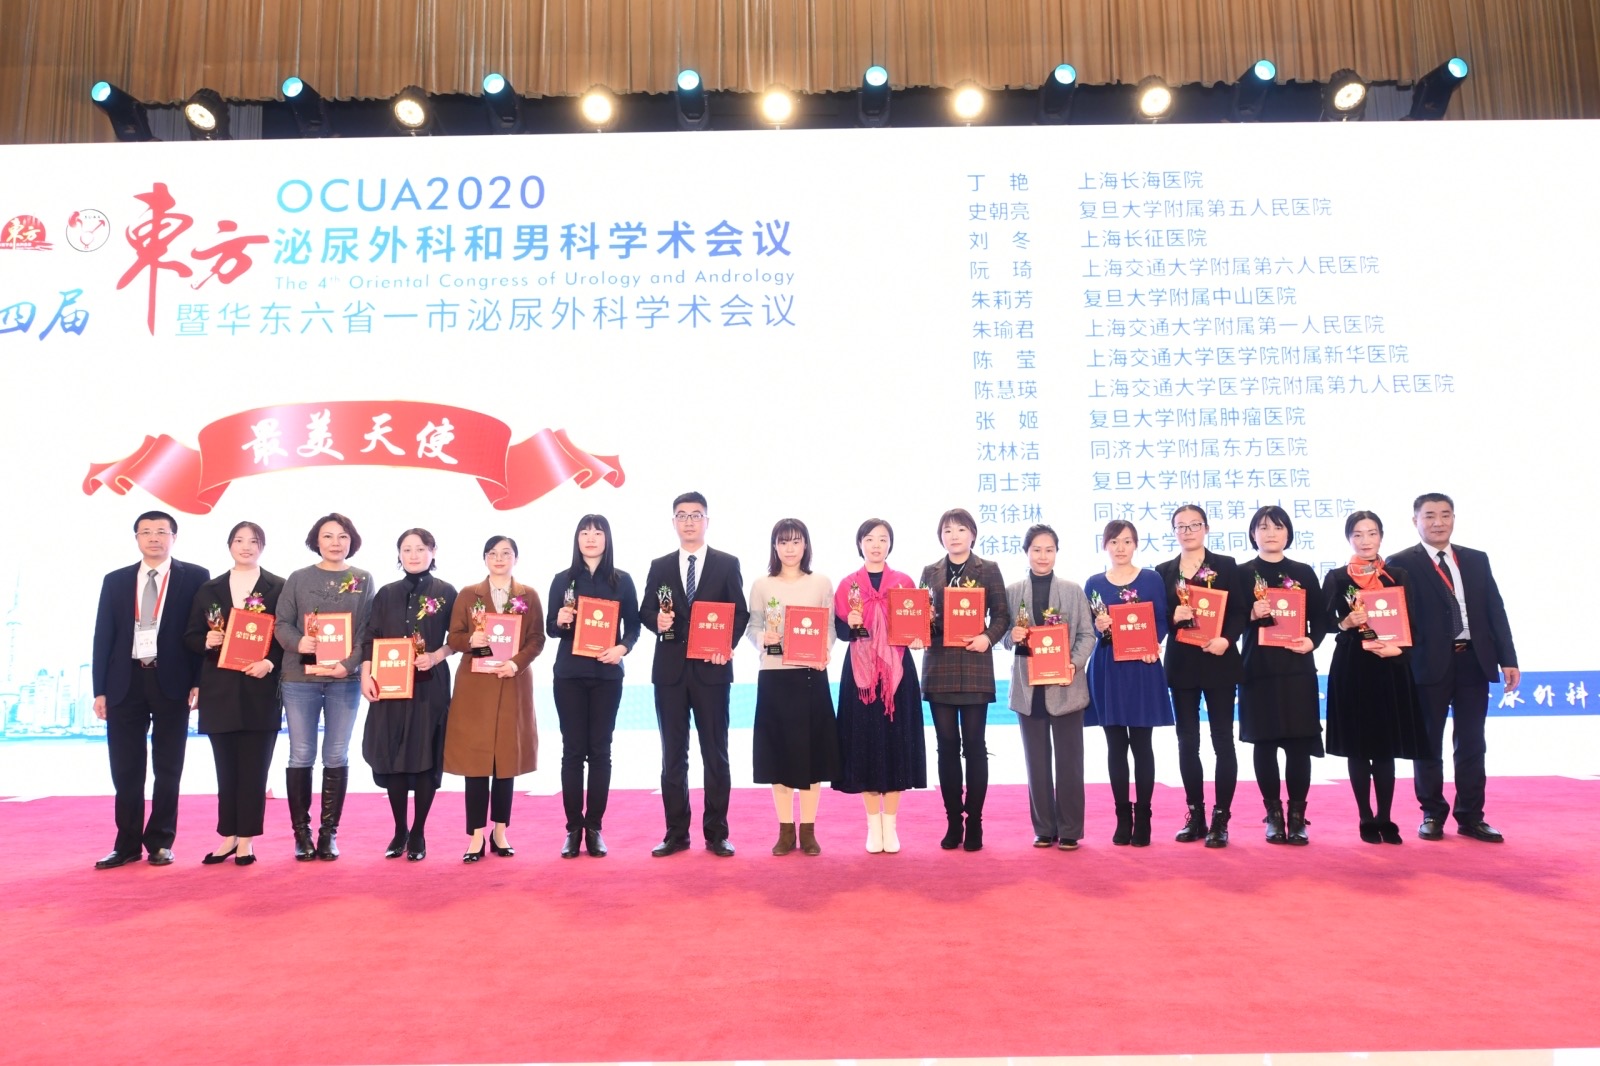 上海市第五人民医院史朝亮等16名主管护师荣获“2020最美天使”奖